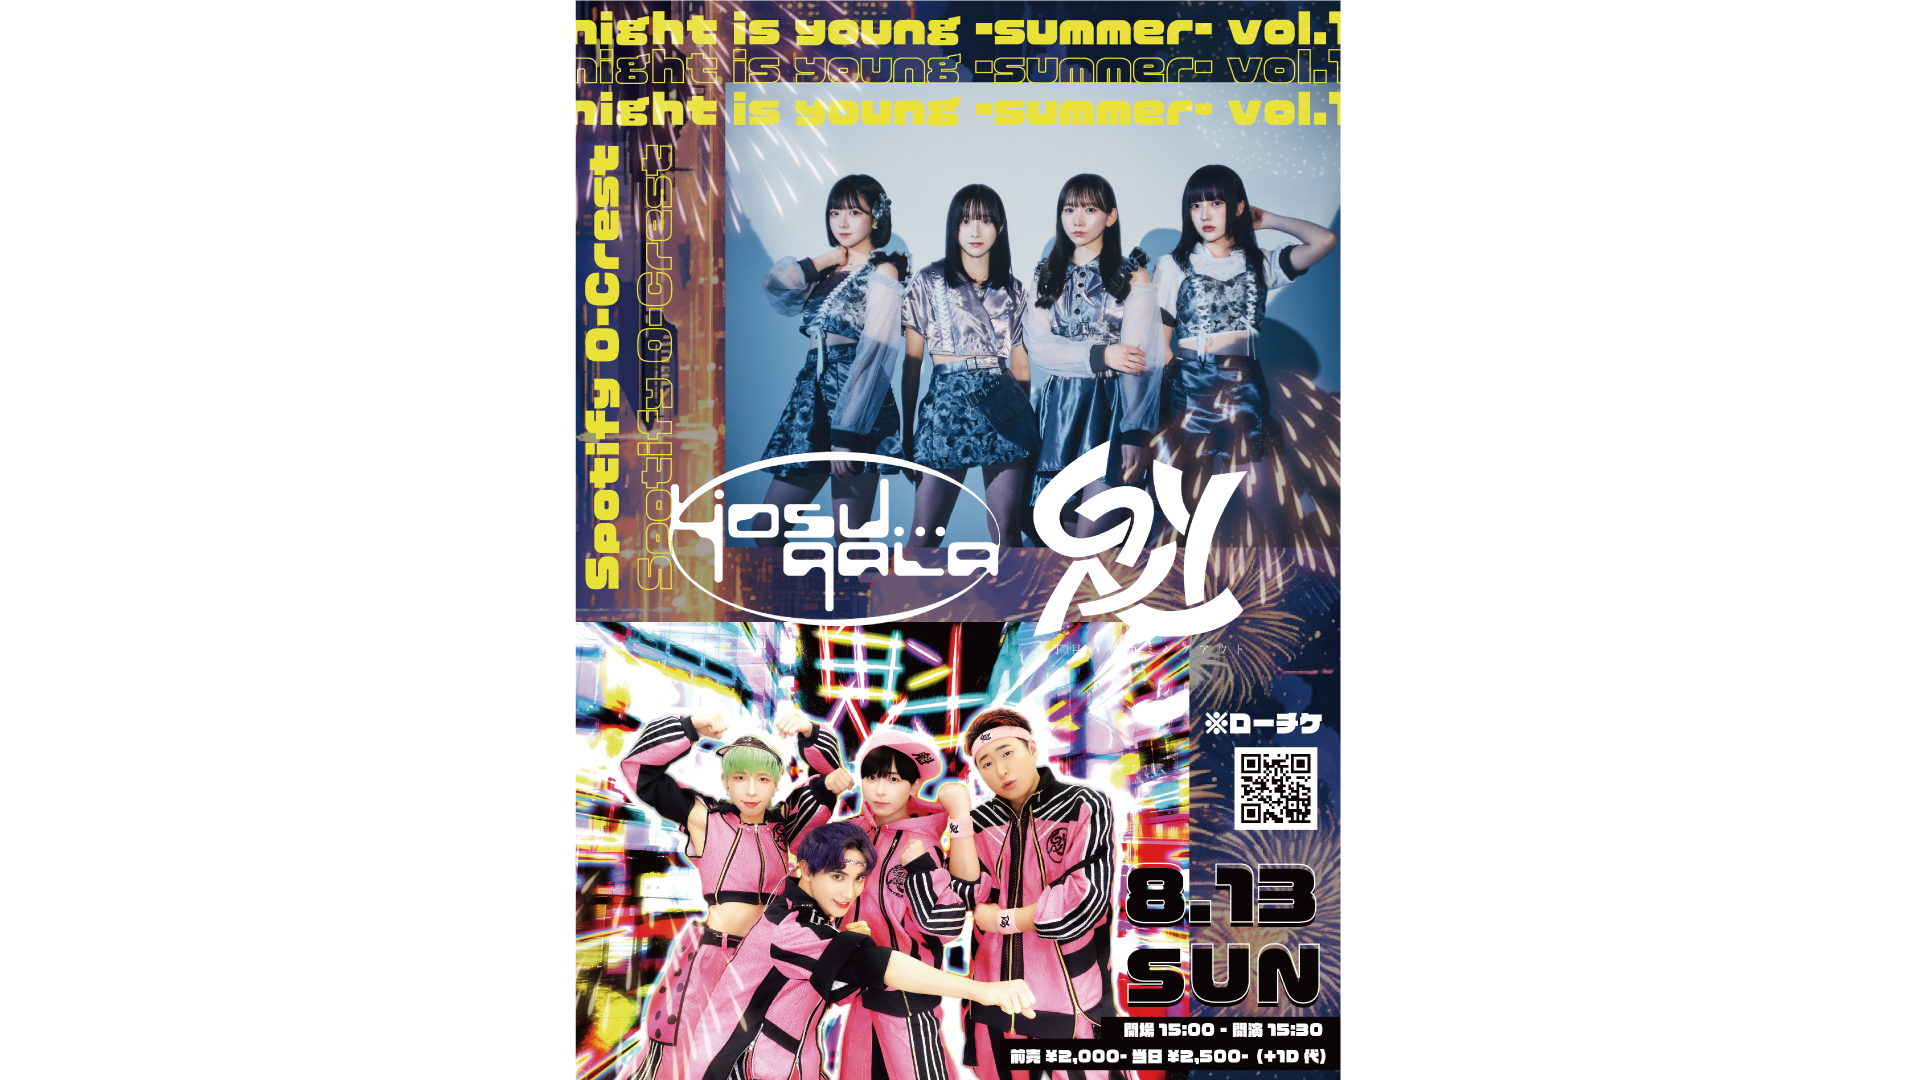 23/8/13 night is young -summer- vol.1 yosugala/二丁目の魁カミングアウト